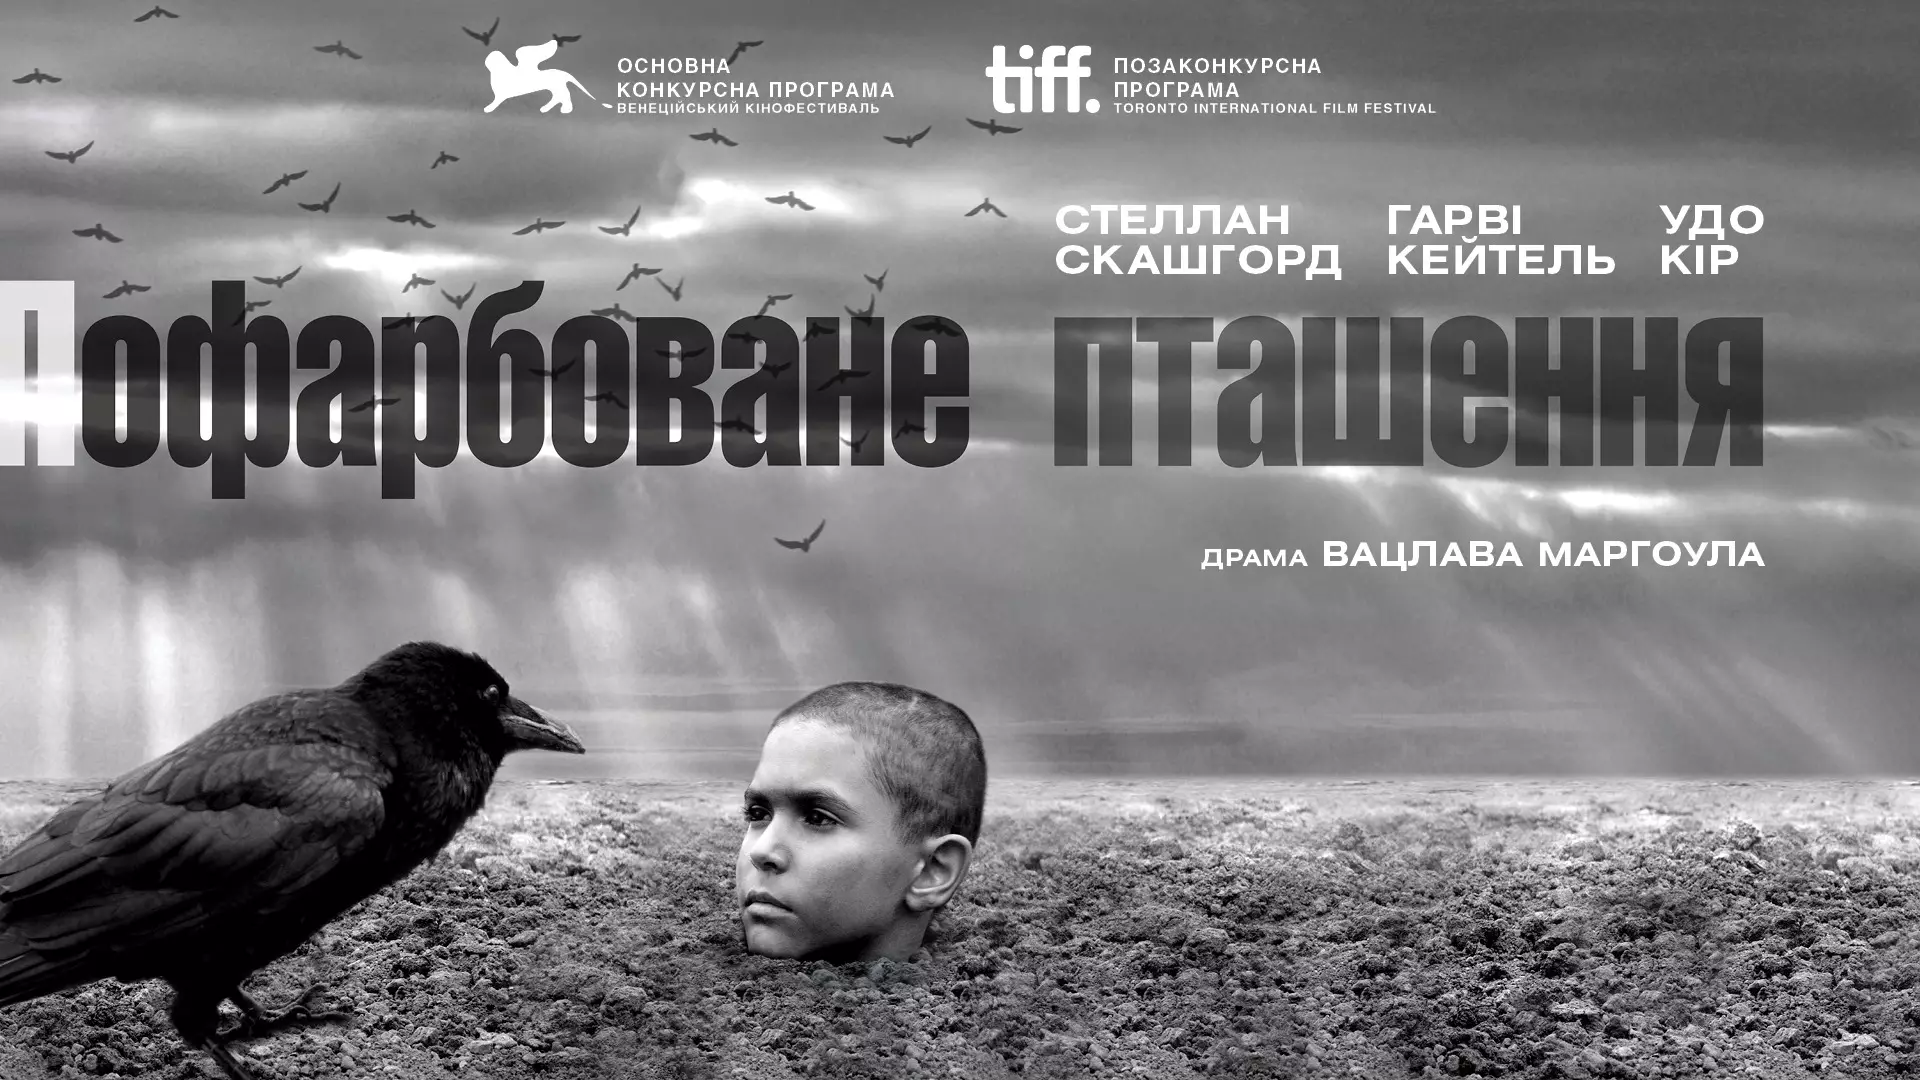 Фильм "Раскрашенная птица" номинирован на премию Европейской киноакадемии